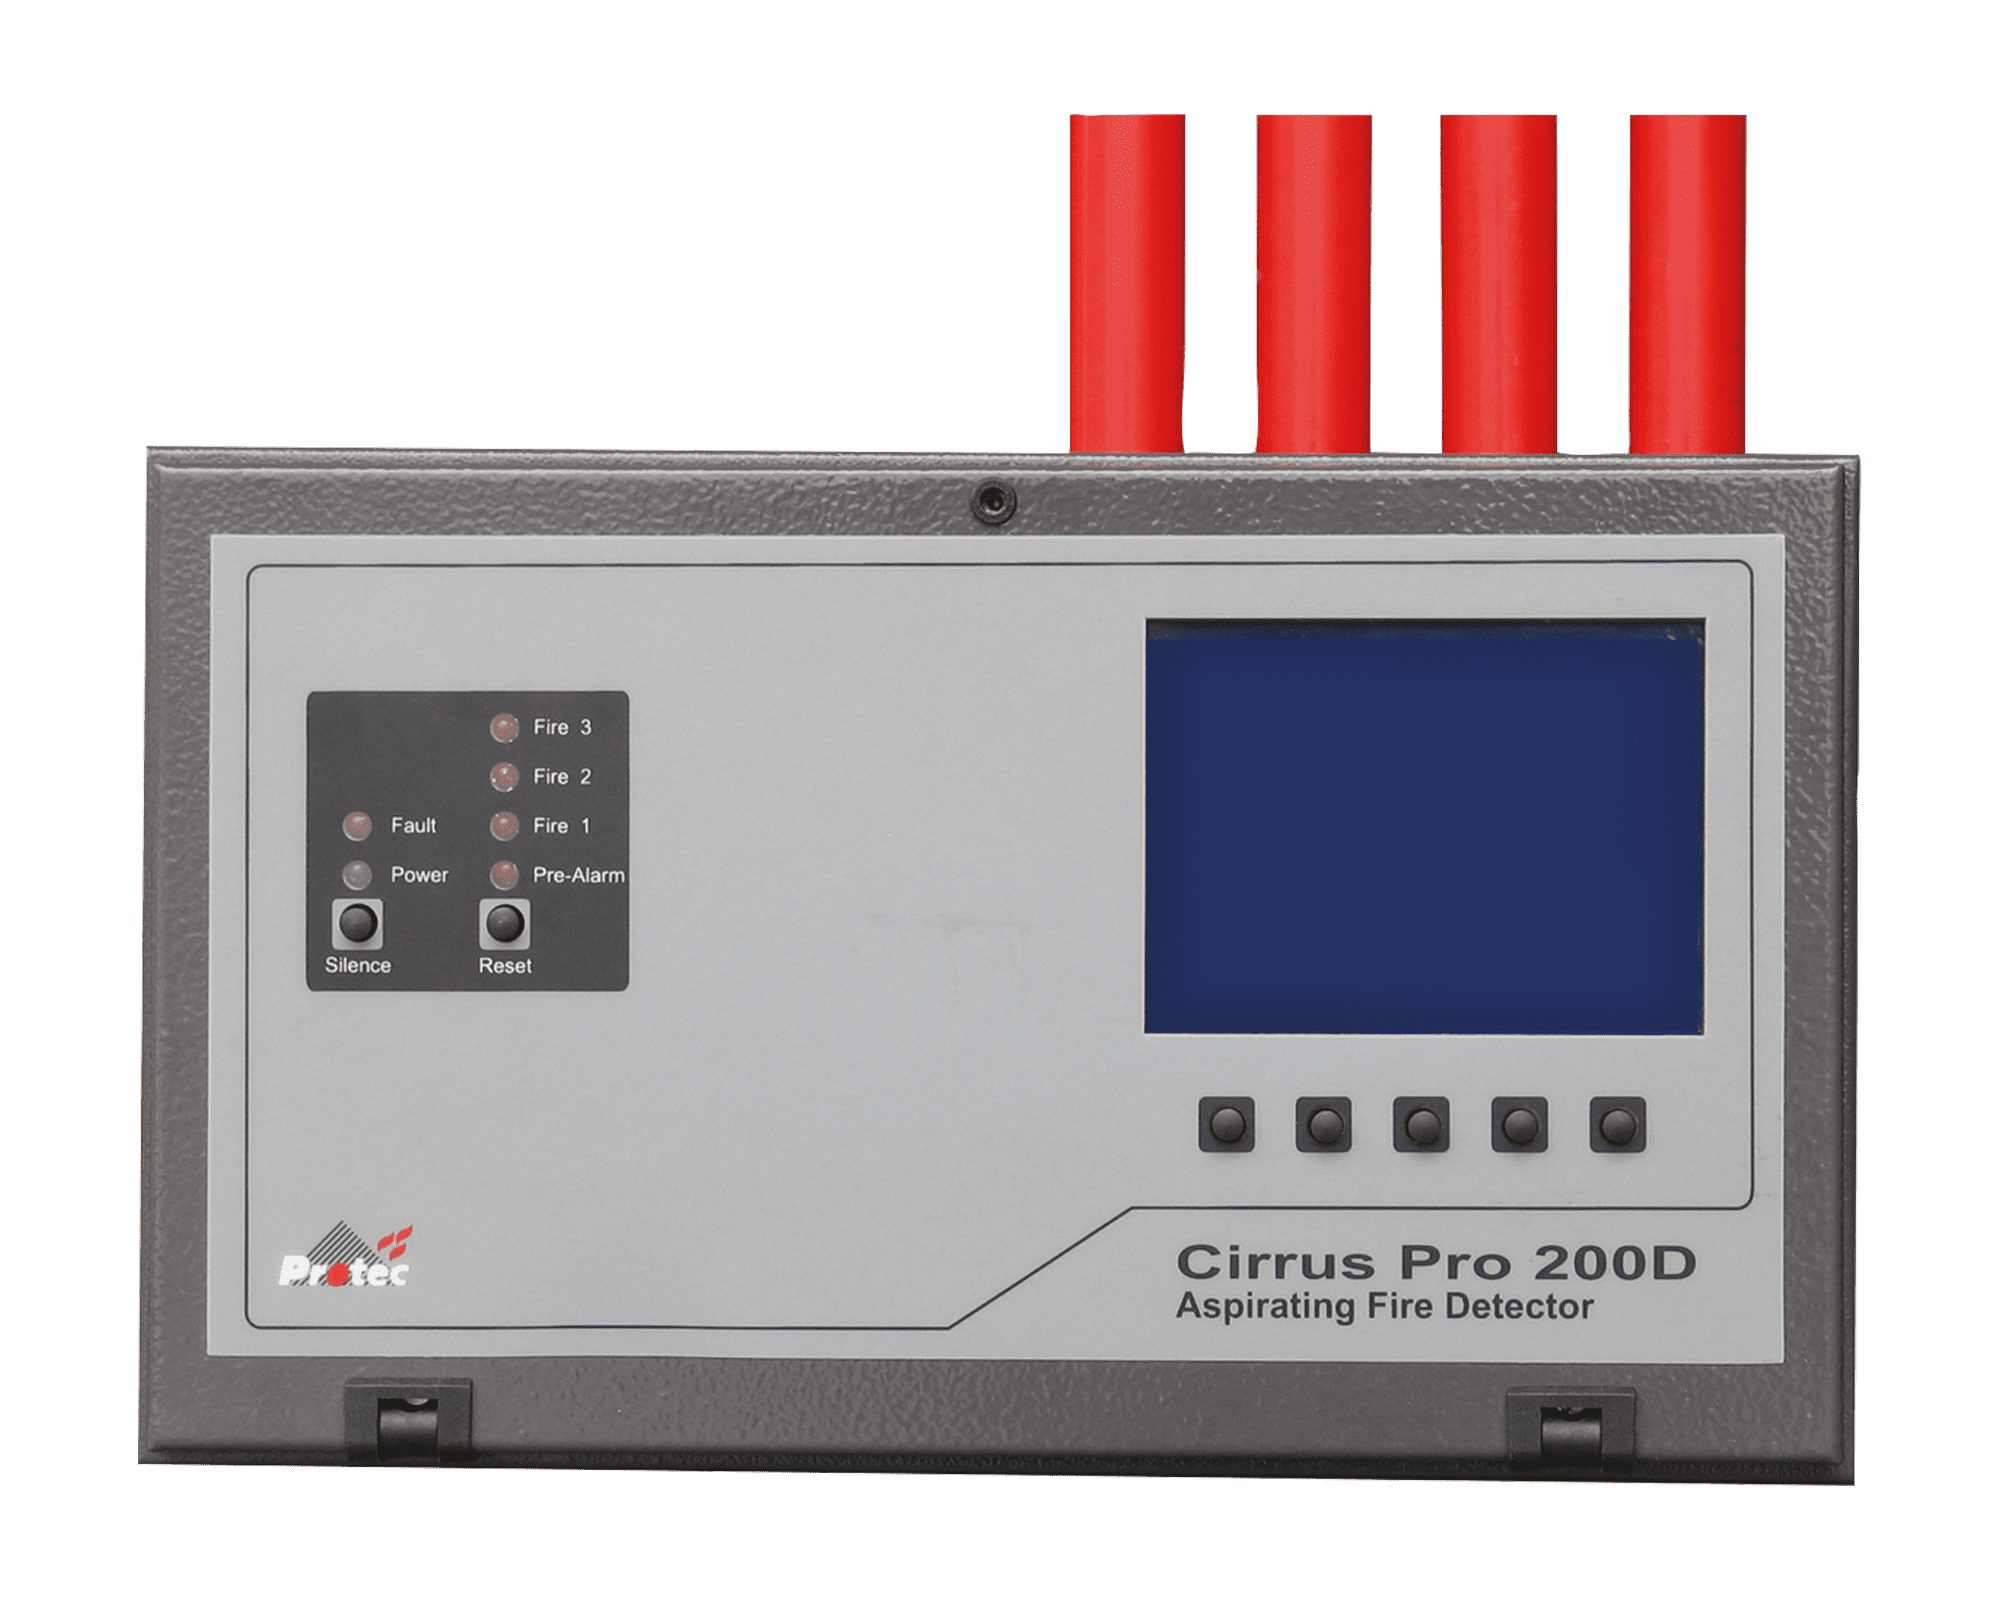 Cirrus Pro 200D Aspirating Fire Detectors